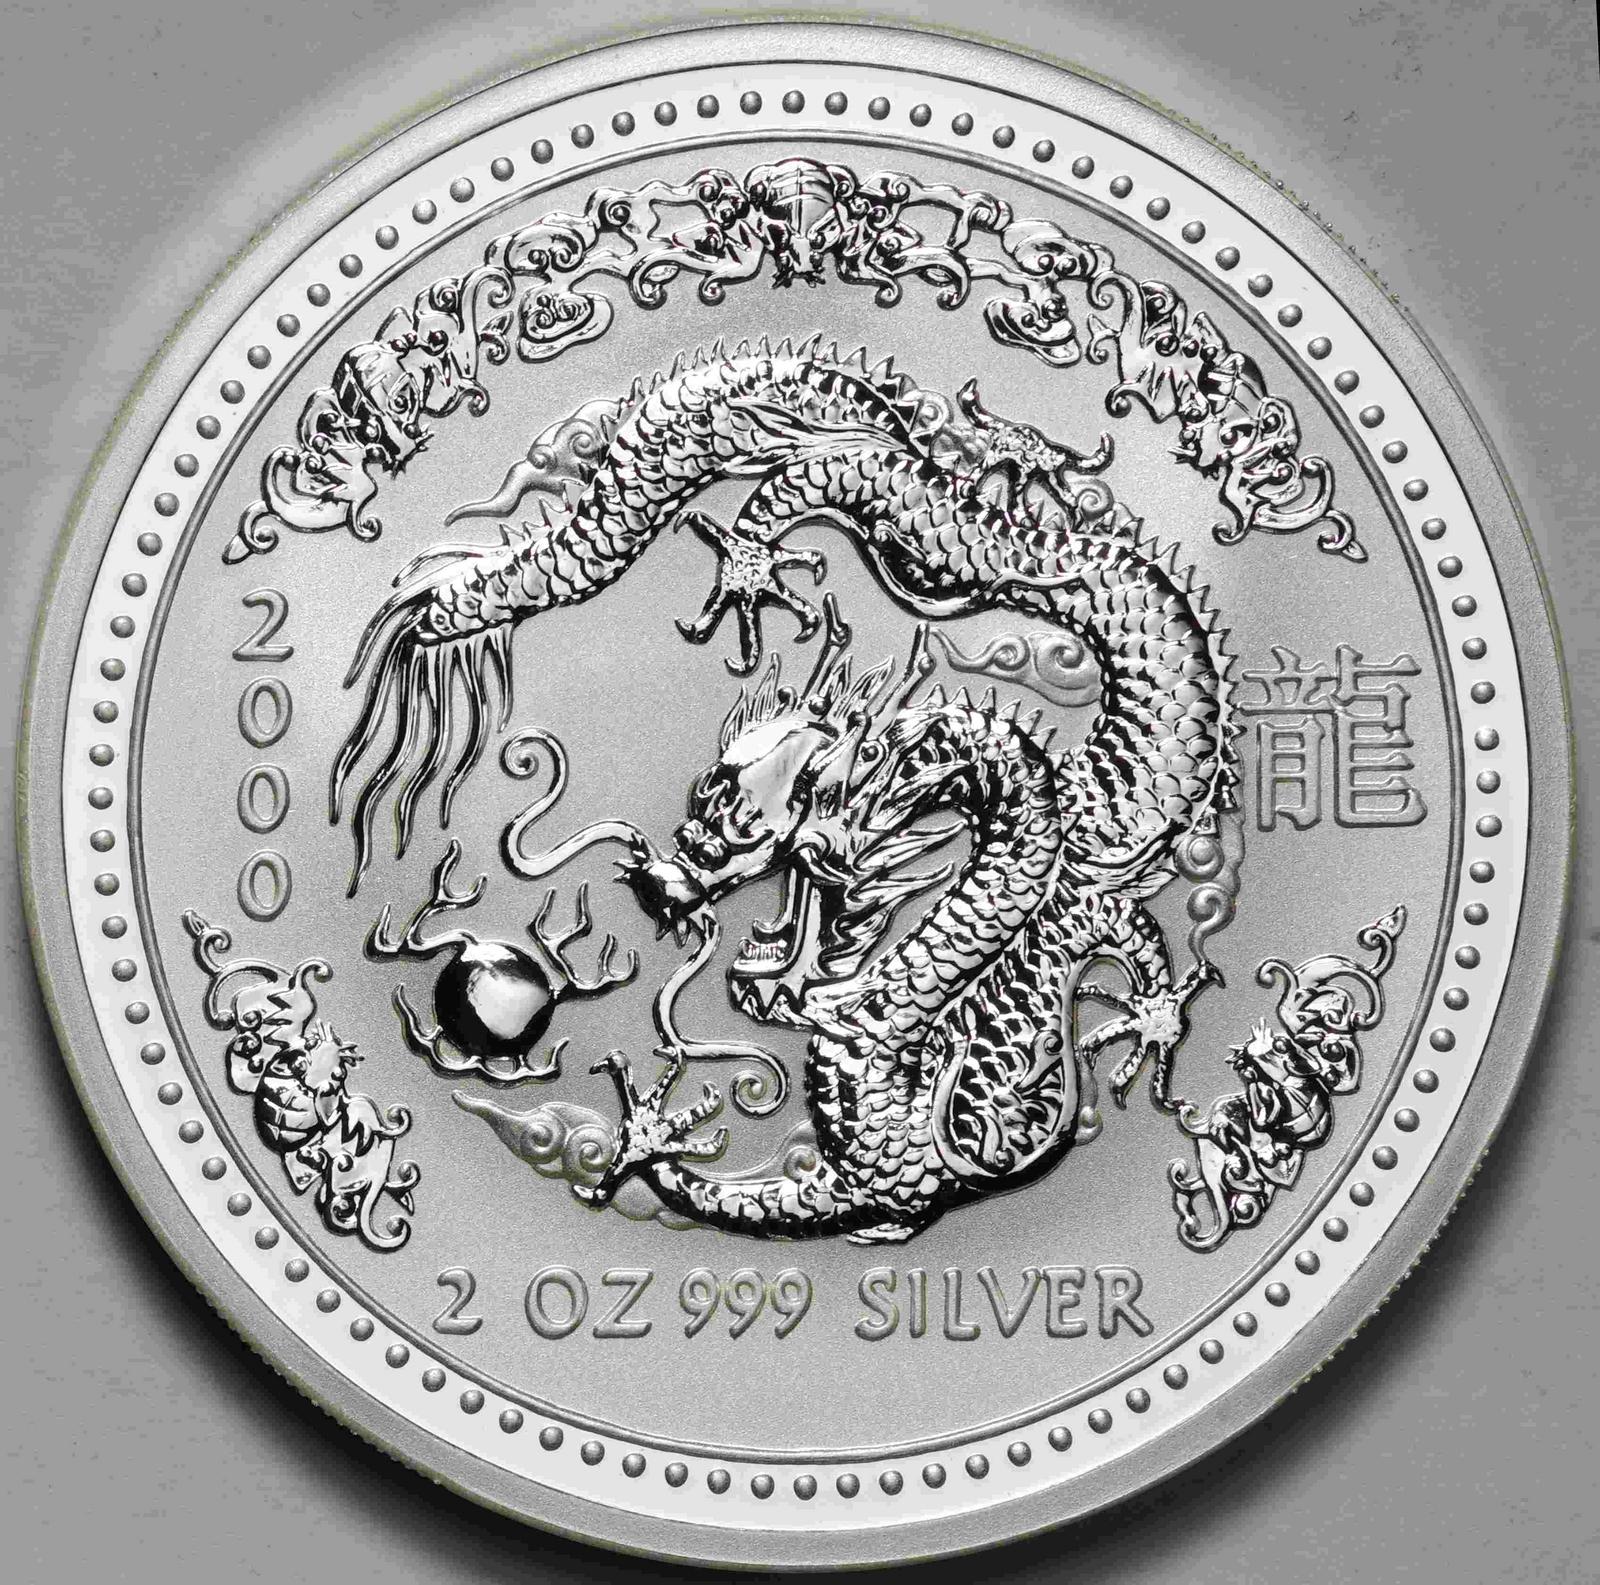 オーストラリア-Australia. 十二支干支 辰年竜図 2ドル(2オンス)銀貨